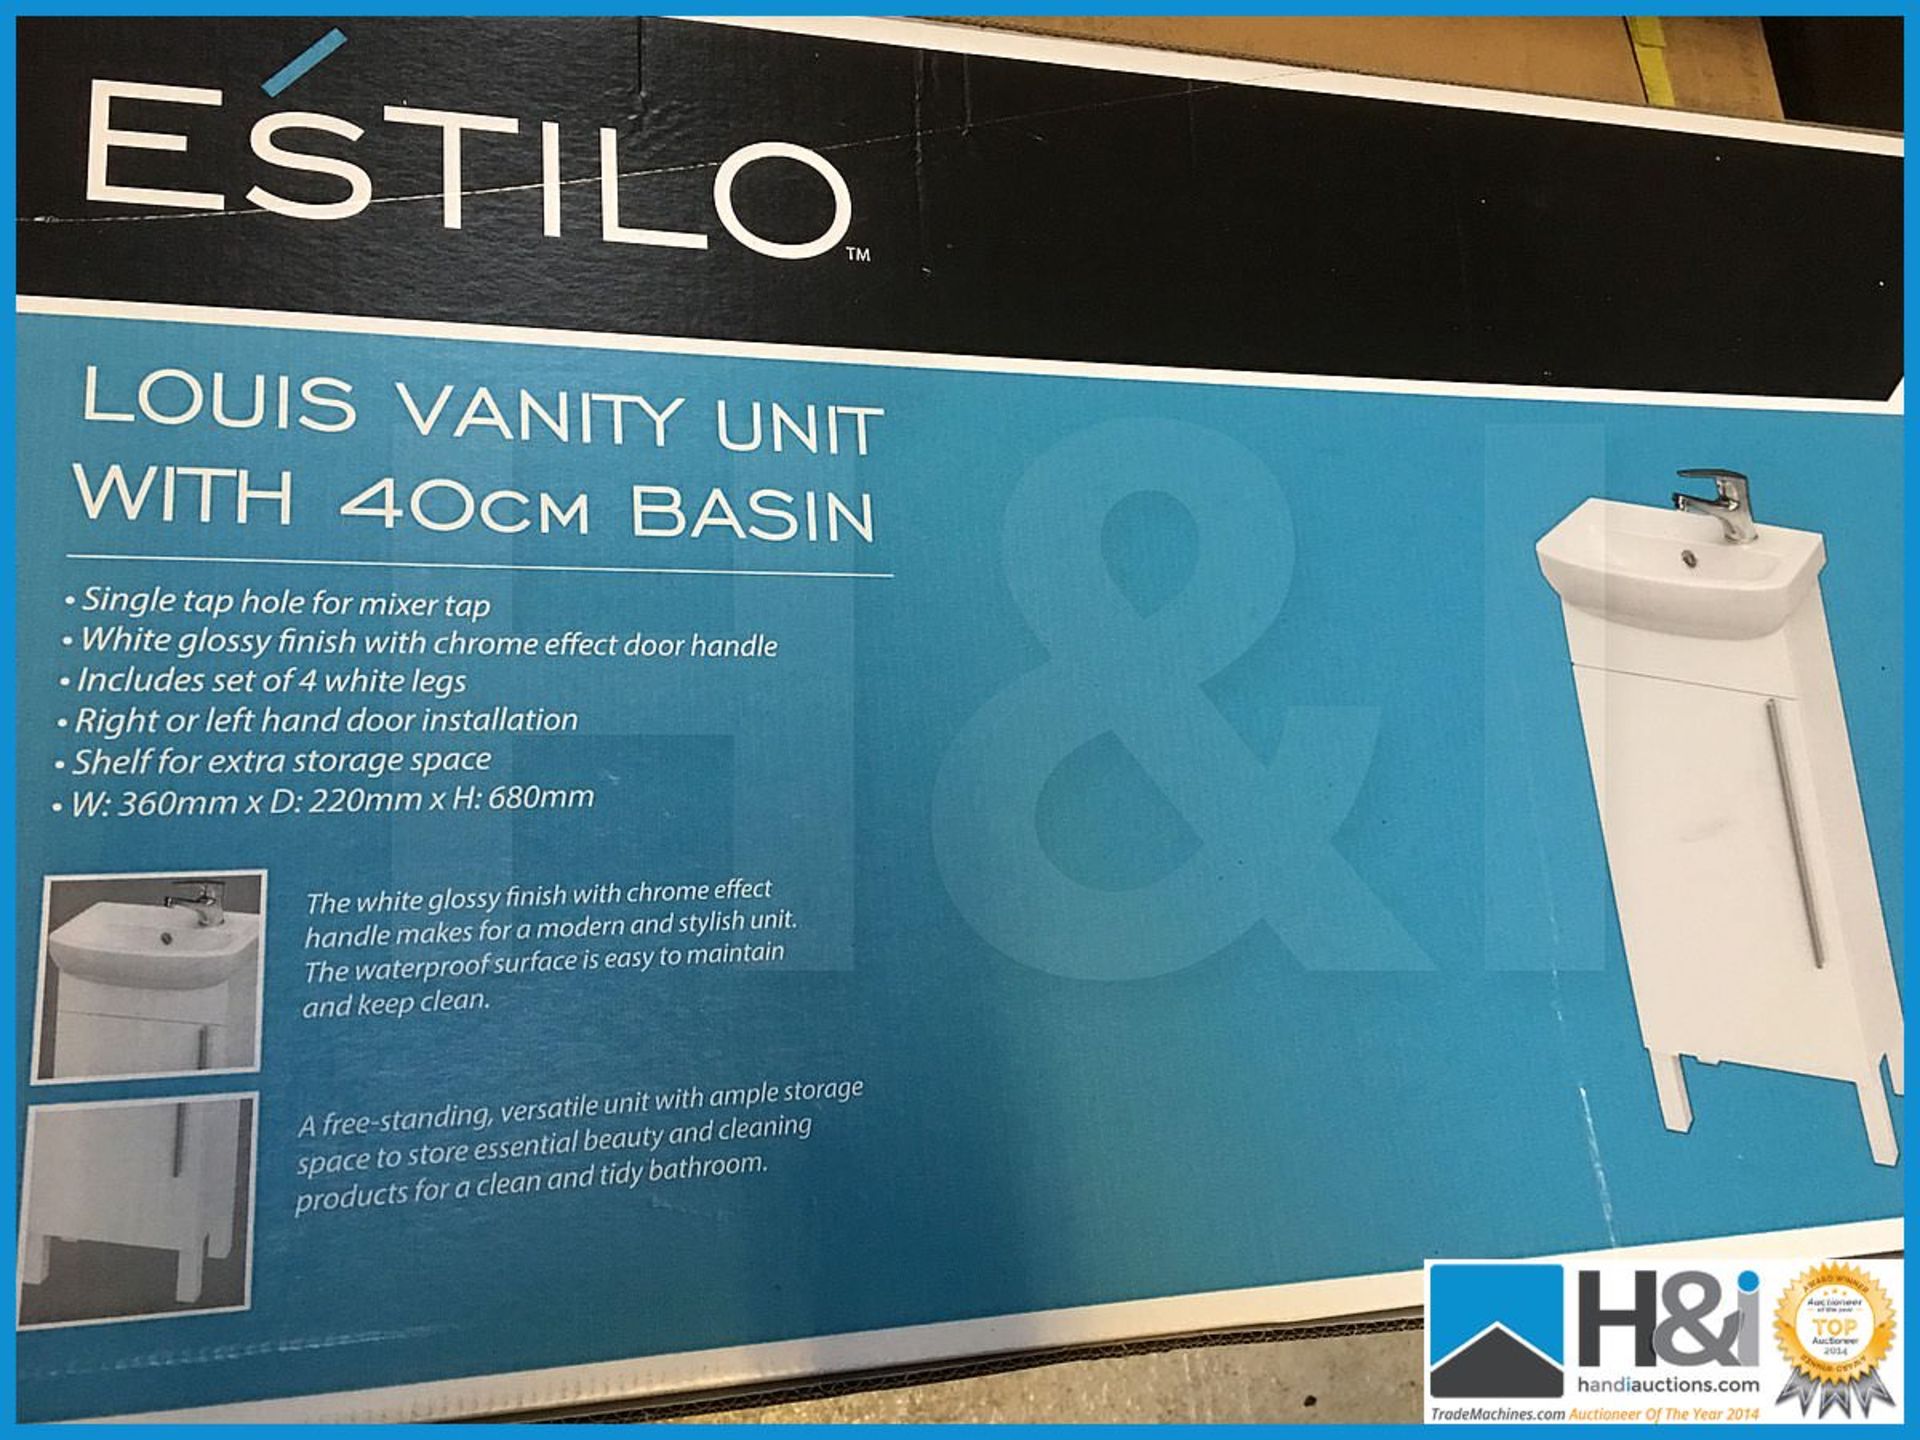 Designer Estilo Louis vanity unit with matching 400mm basin. Includes designer polished chrome V05